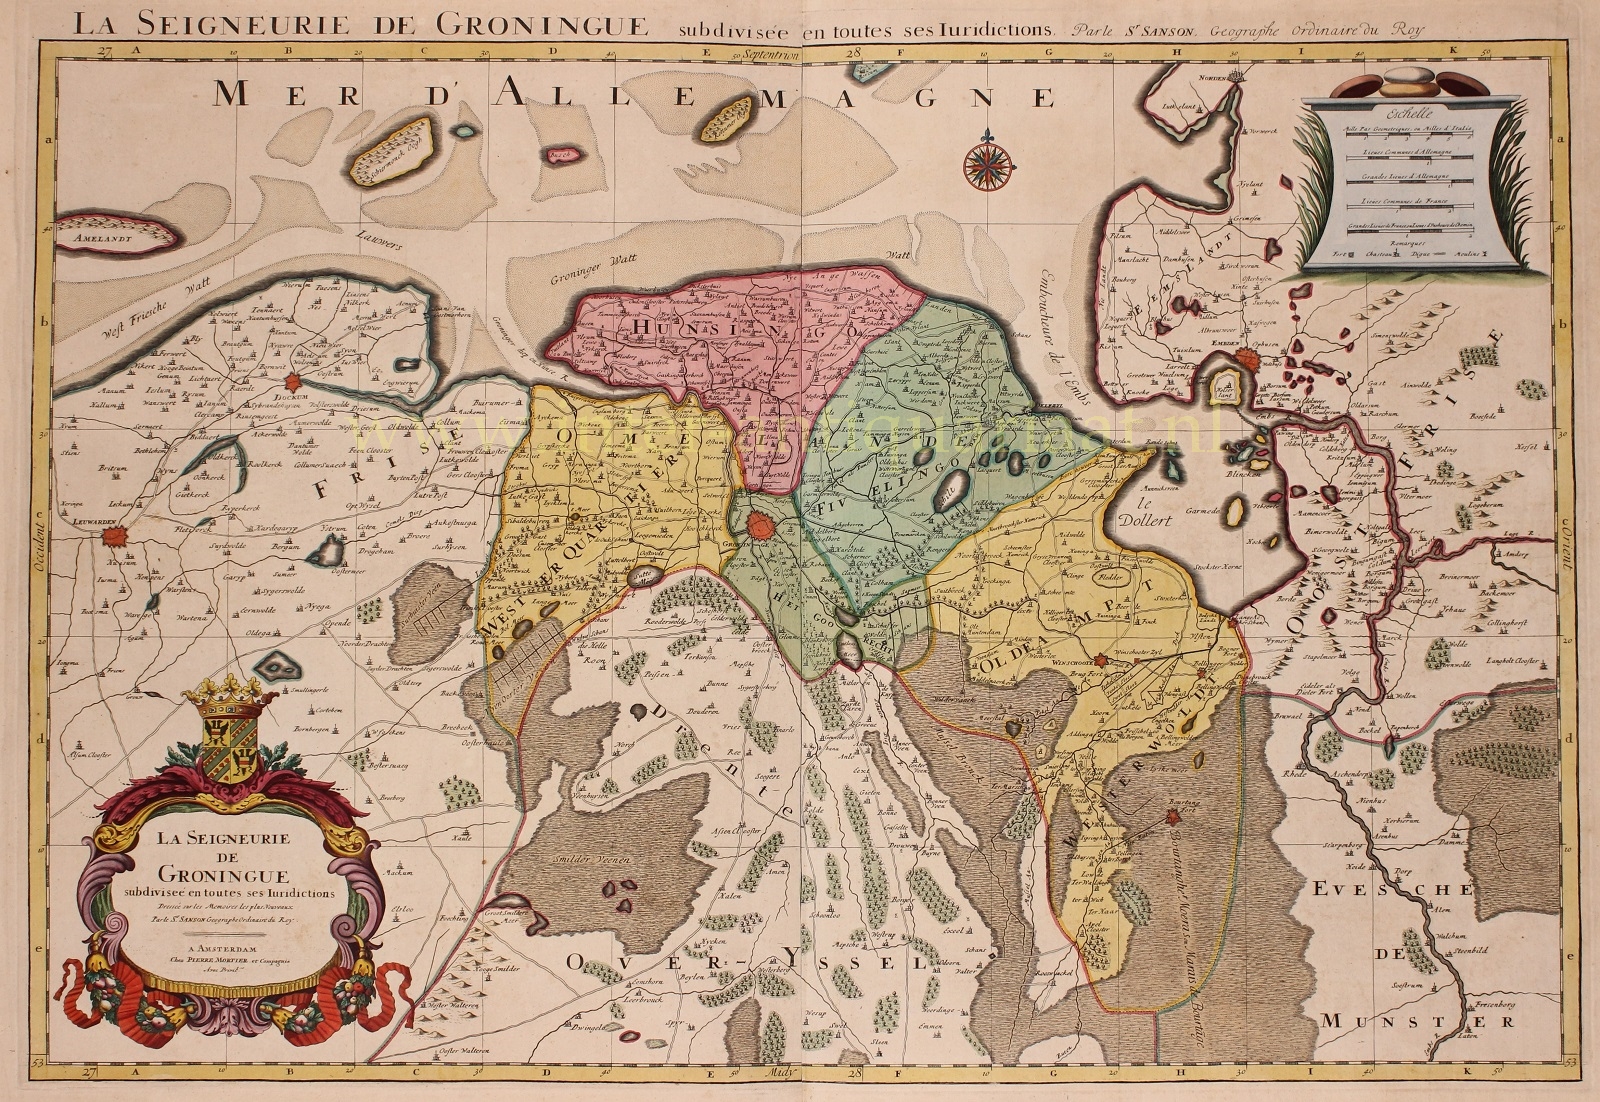  - Groningen - Nicolas Sanson + Pieter Mortier, 1692